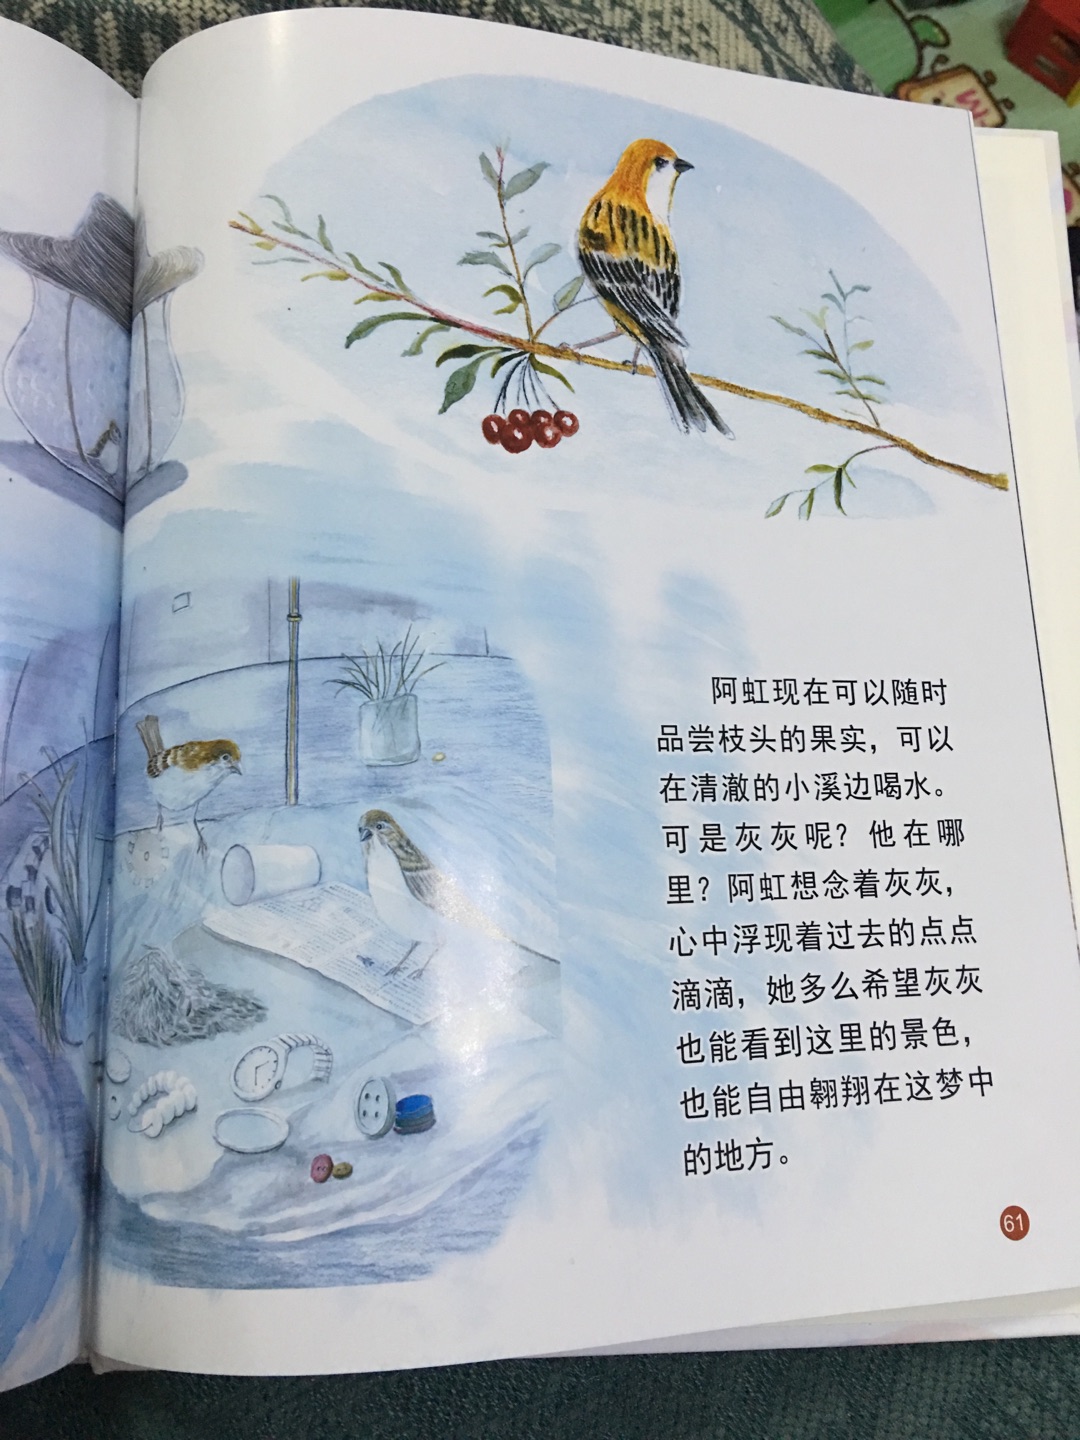 一套都买了，宝宝很喜欢！适合中国喜爱小火车的小孩阅读！